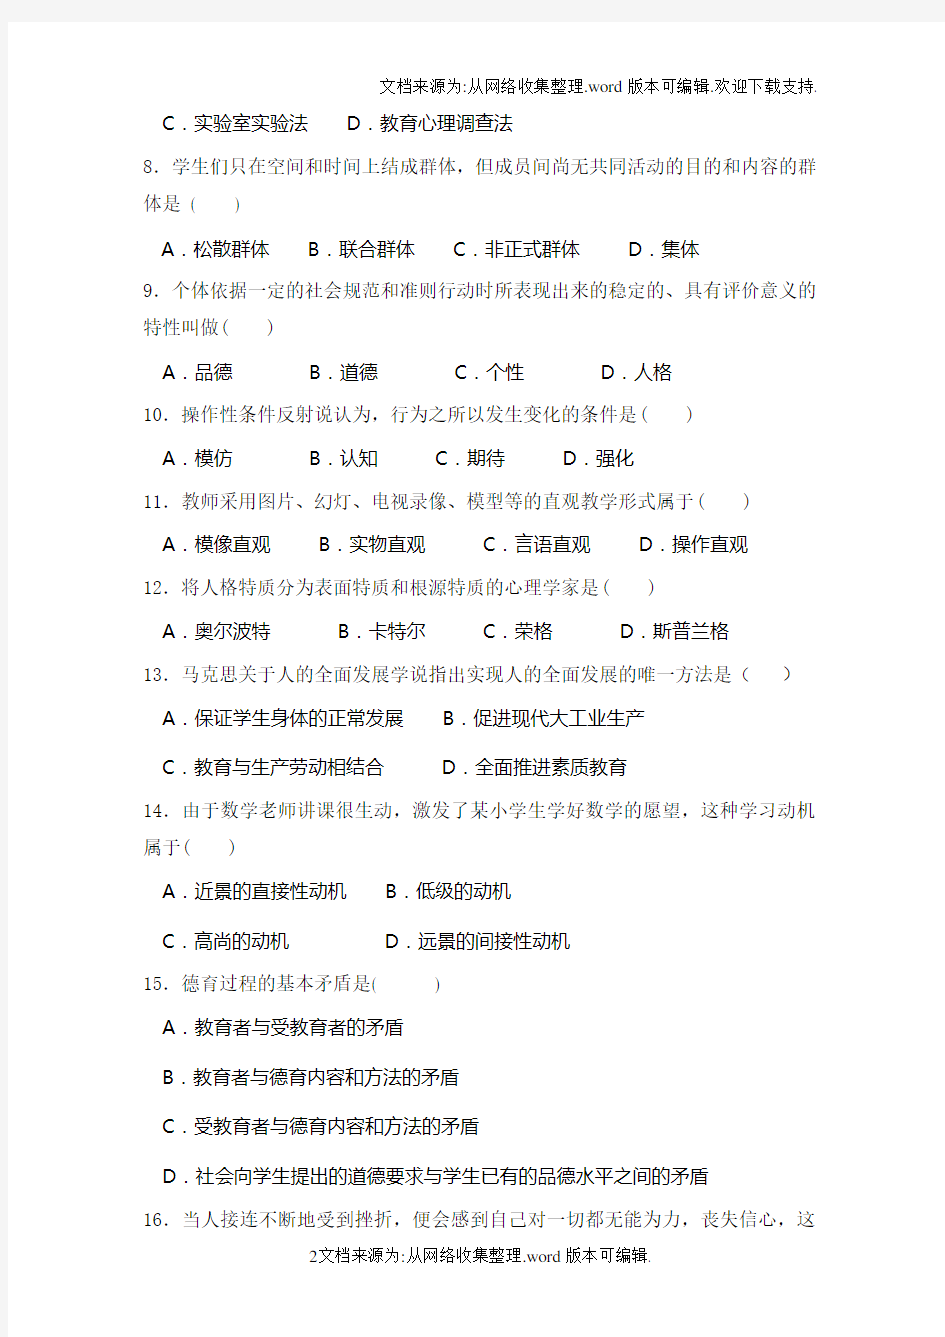 广州市教师招聘考试真题汇编含答案(供参考)